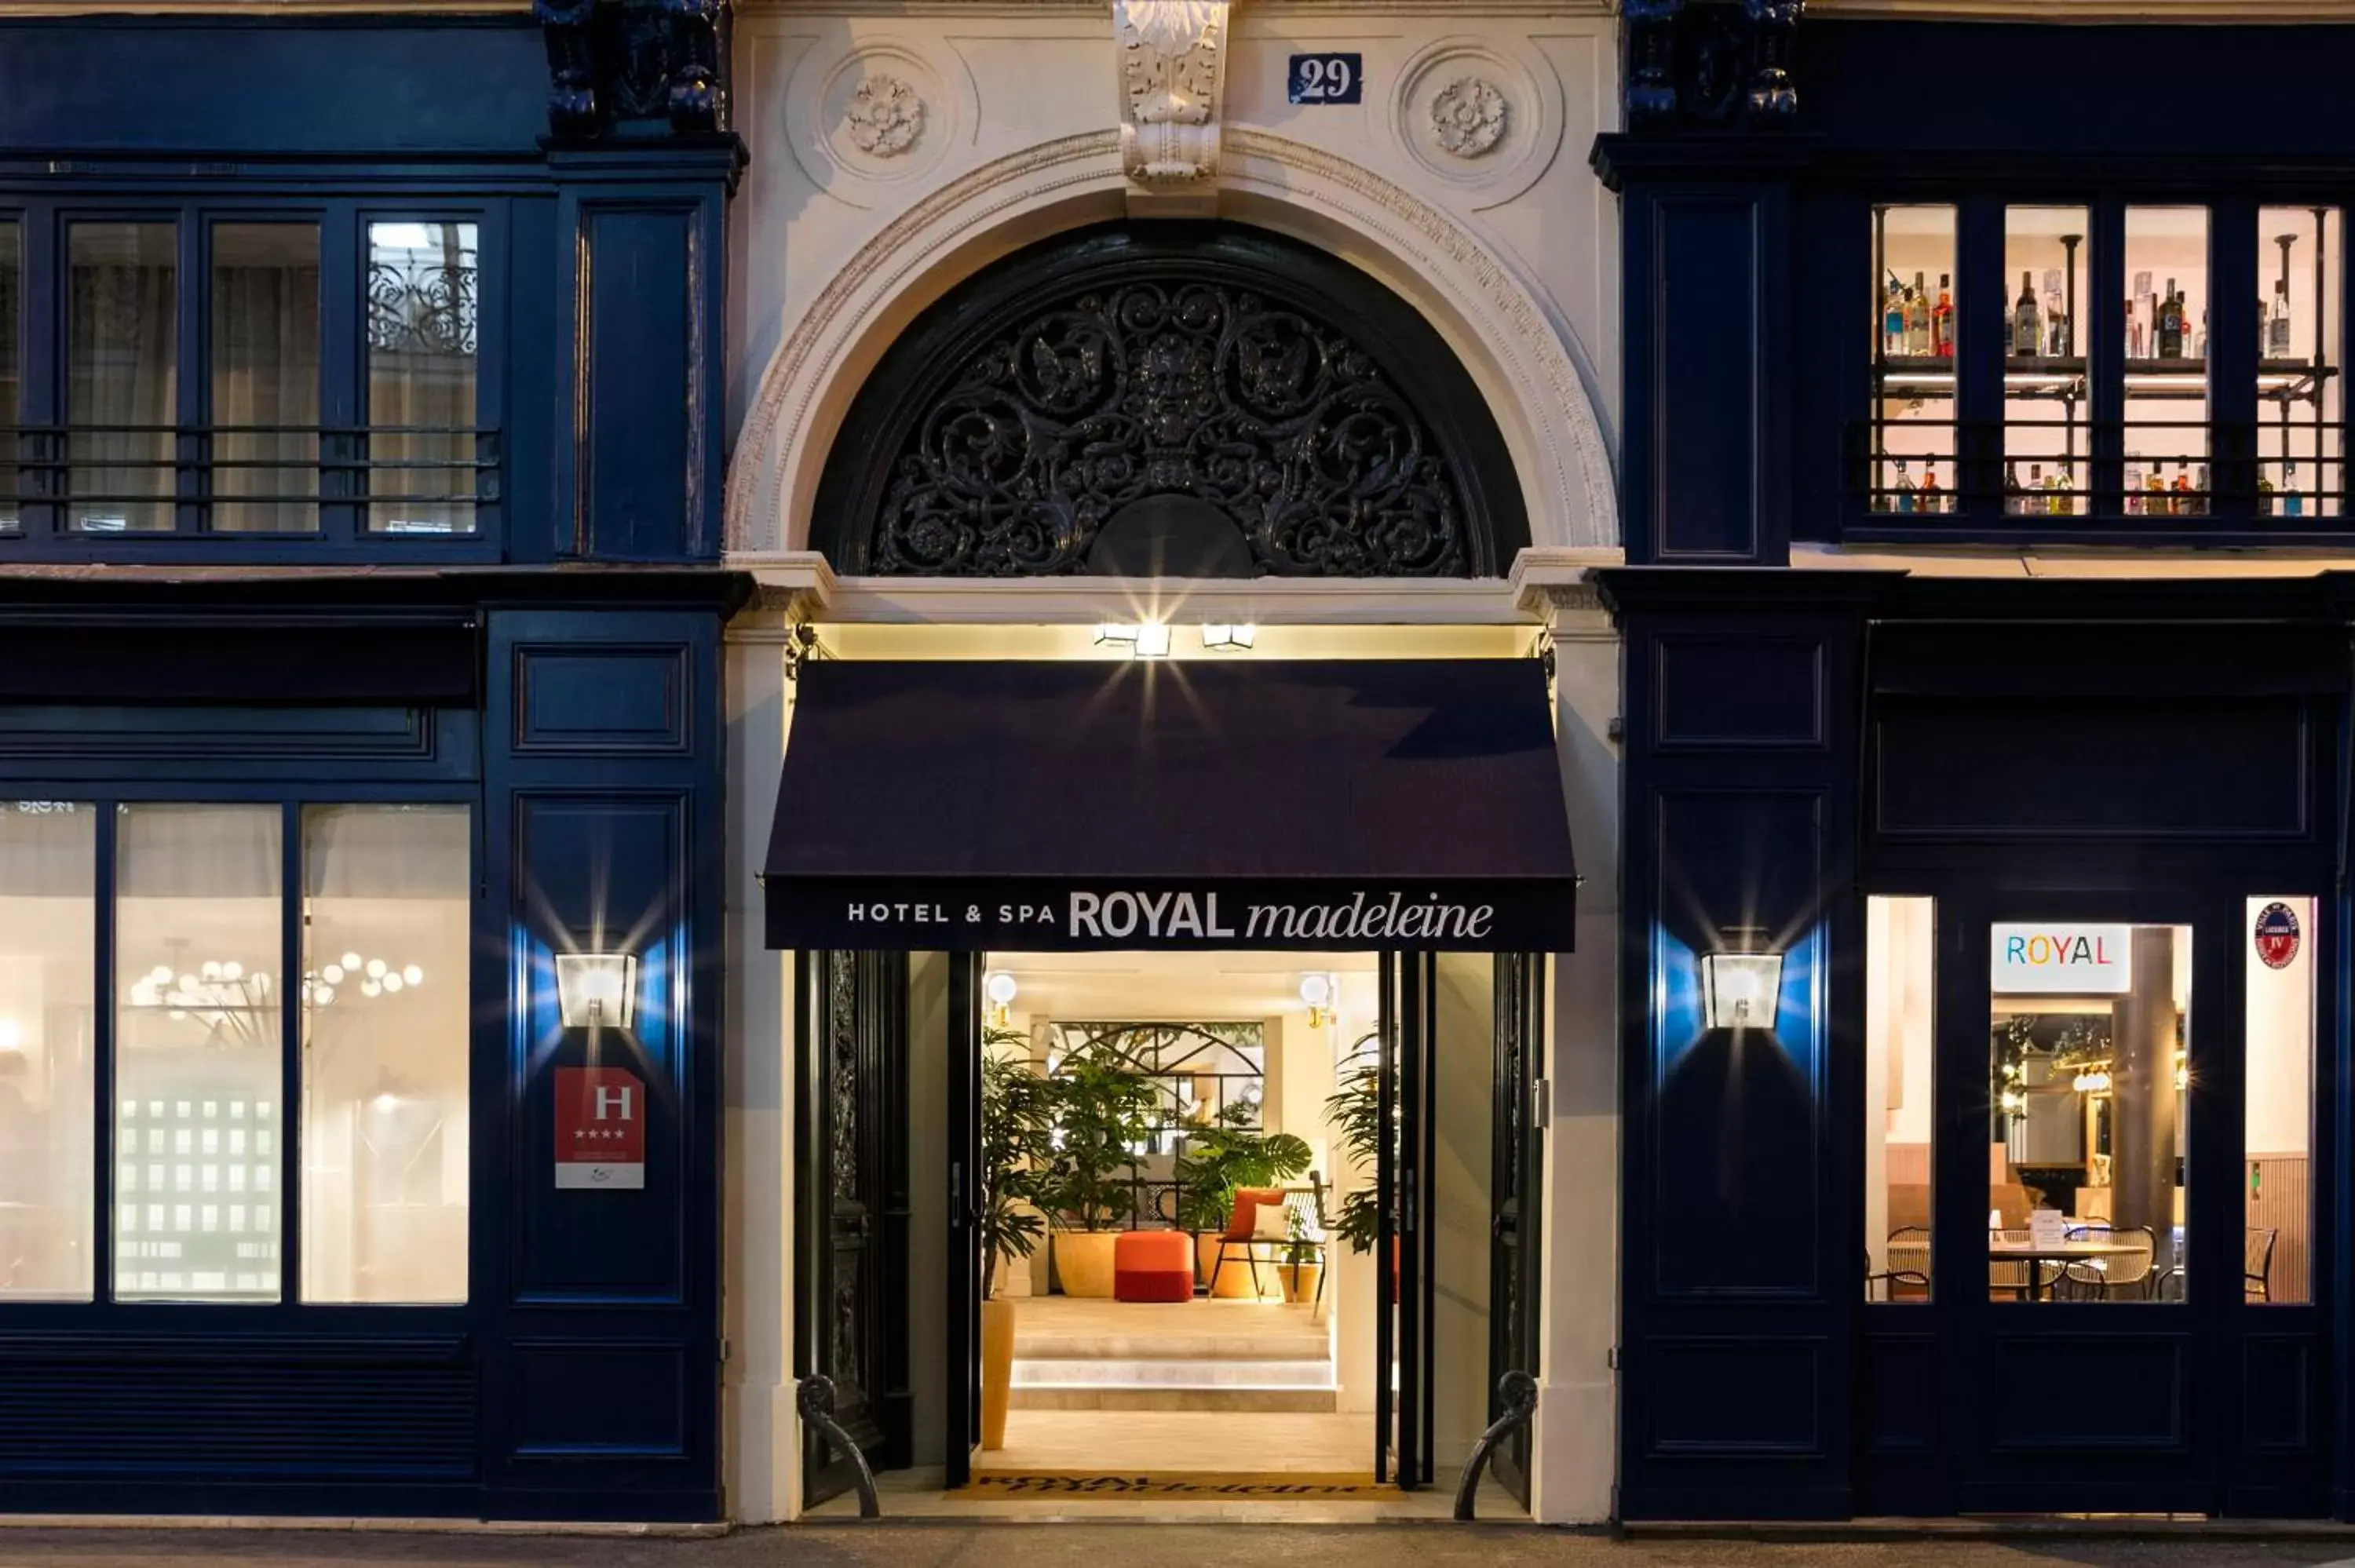 Facade/entrance in Royal Madeleine Hotel & Spa